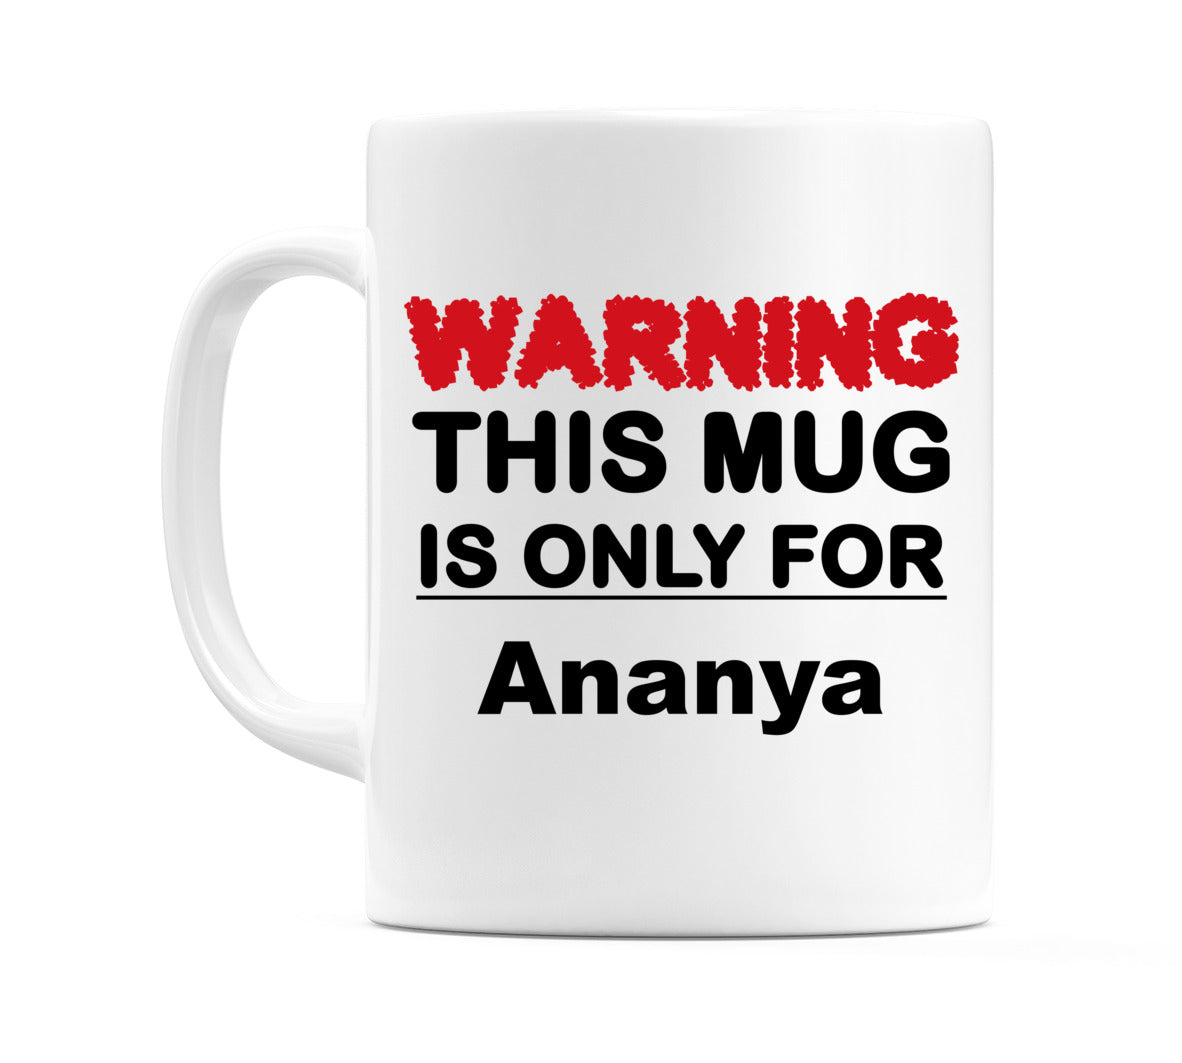 Warning This Mug is ONLY for Ananya Mug